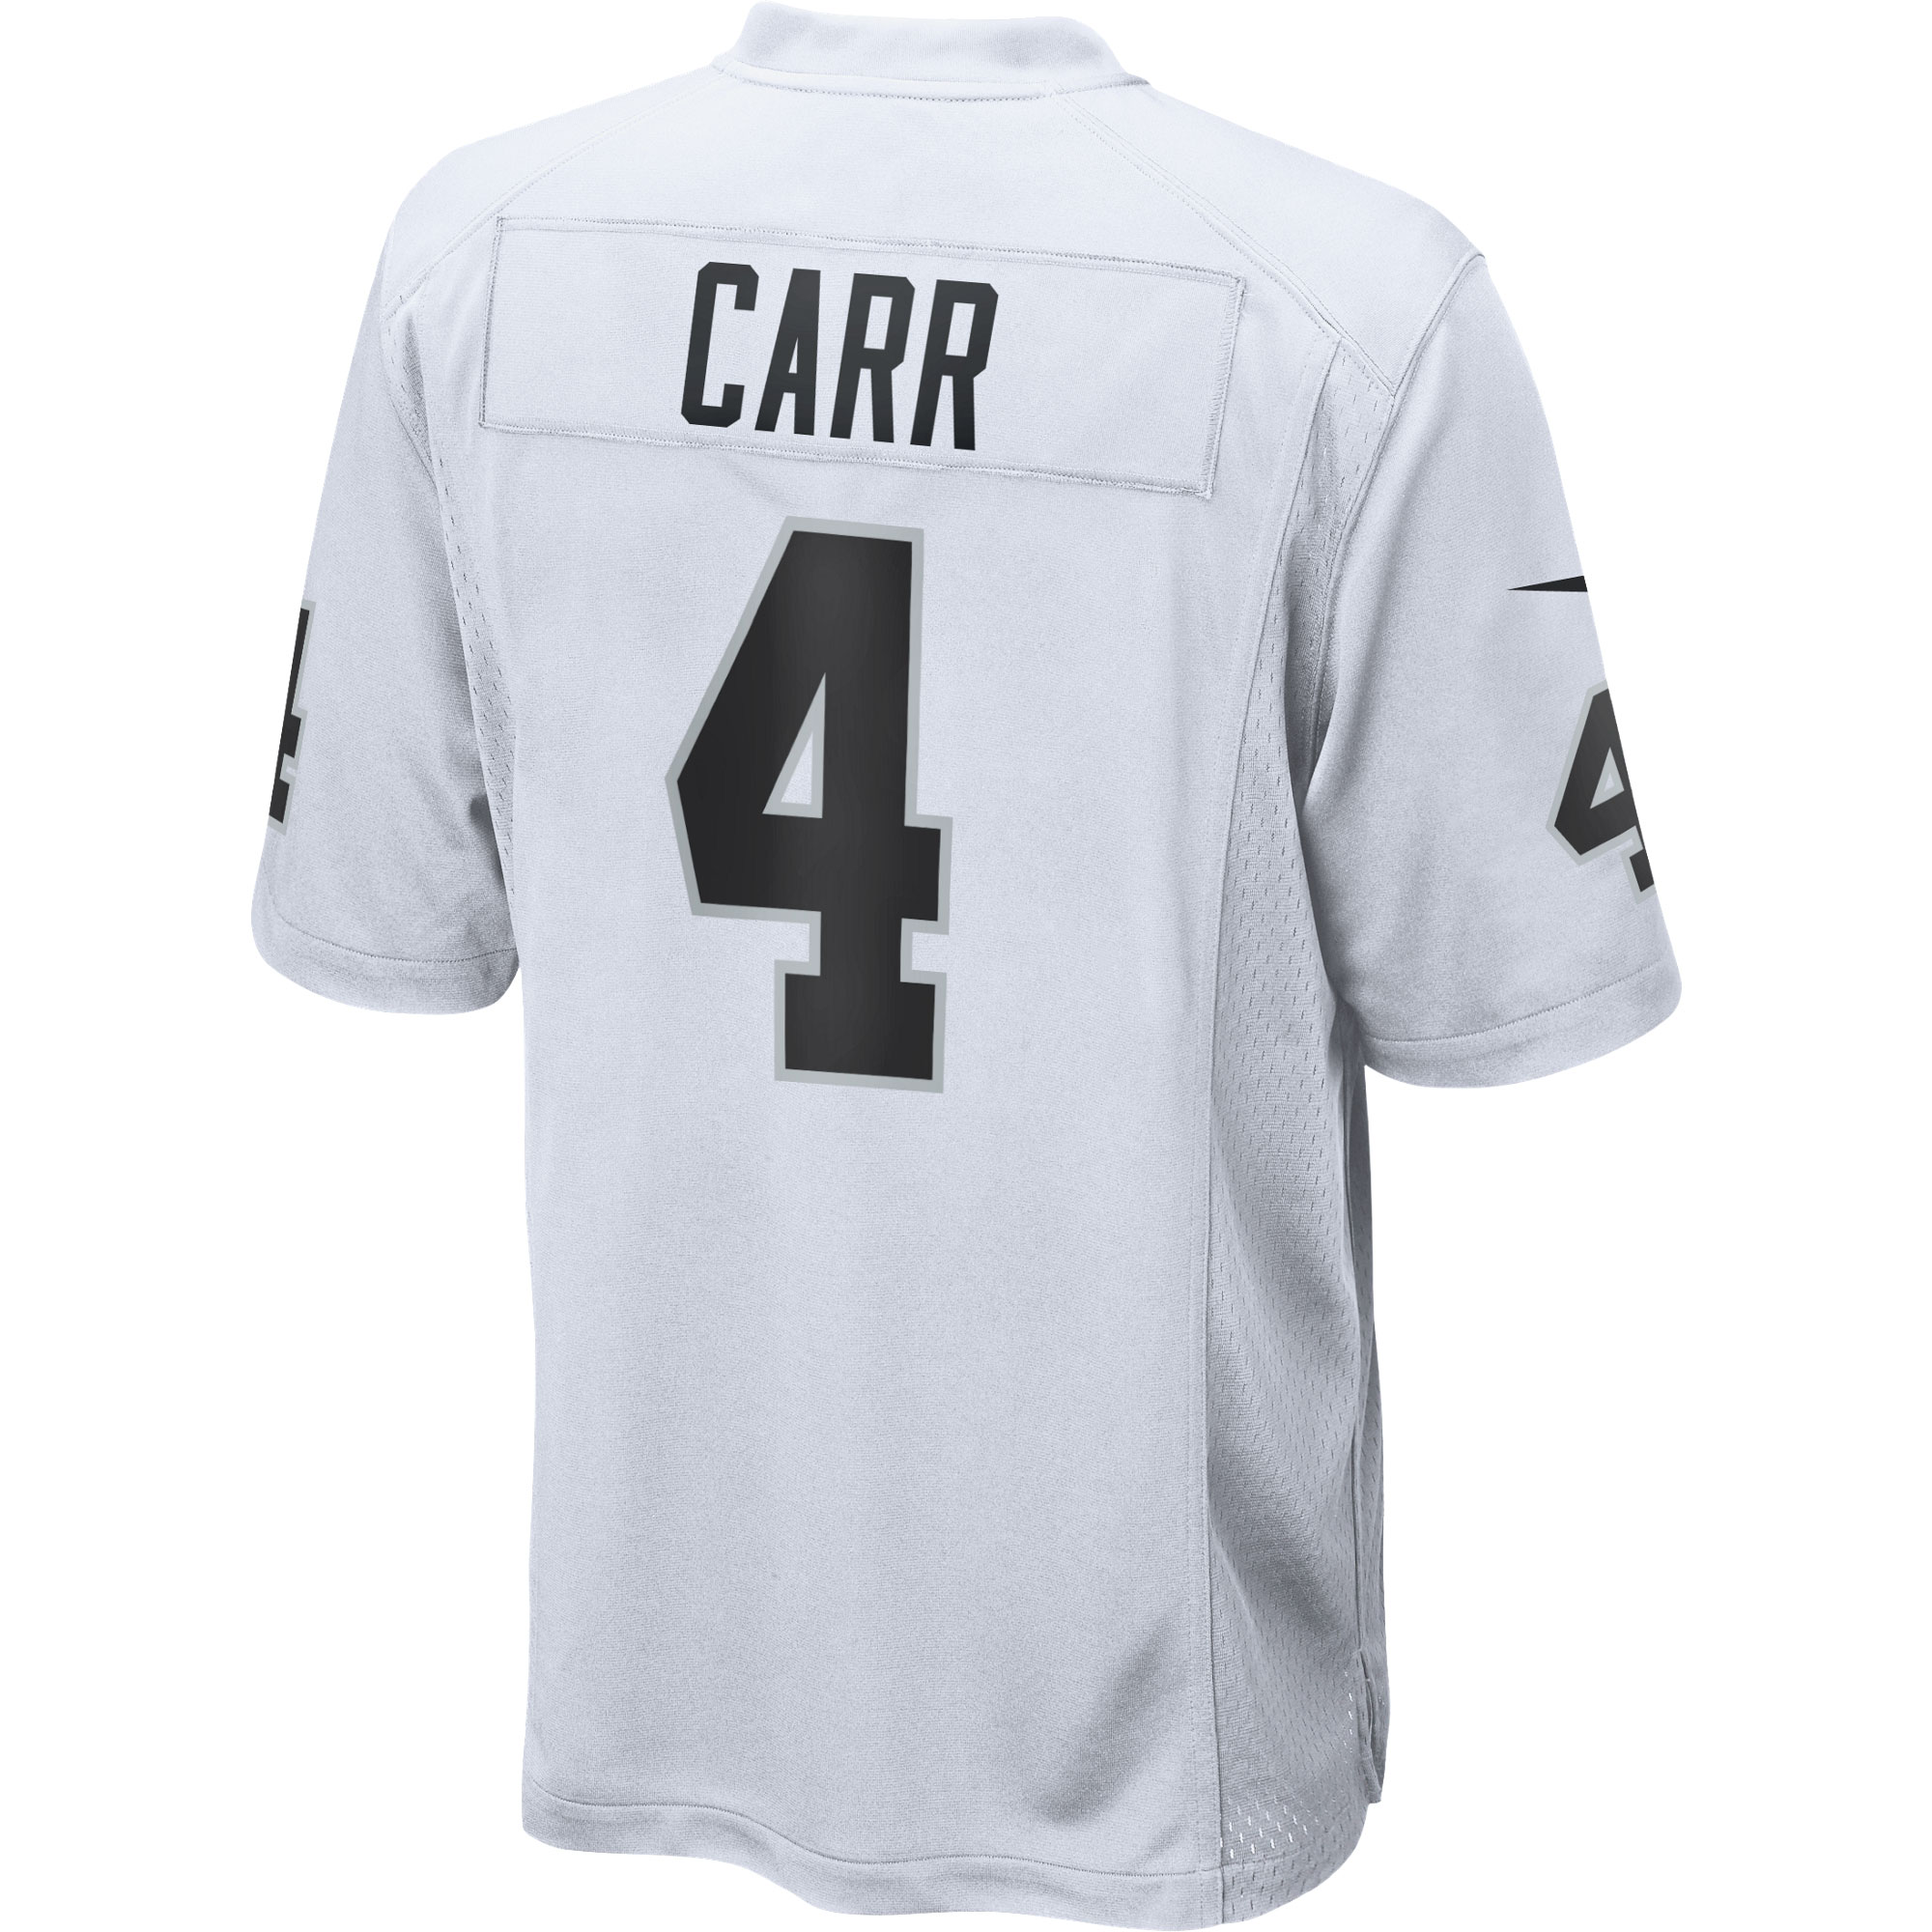 Mens Las Vegas Raiders Derek Carr Nike White Game Jersey